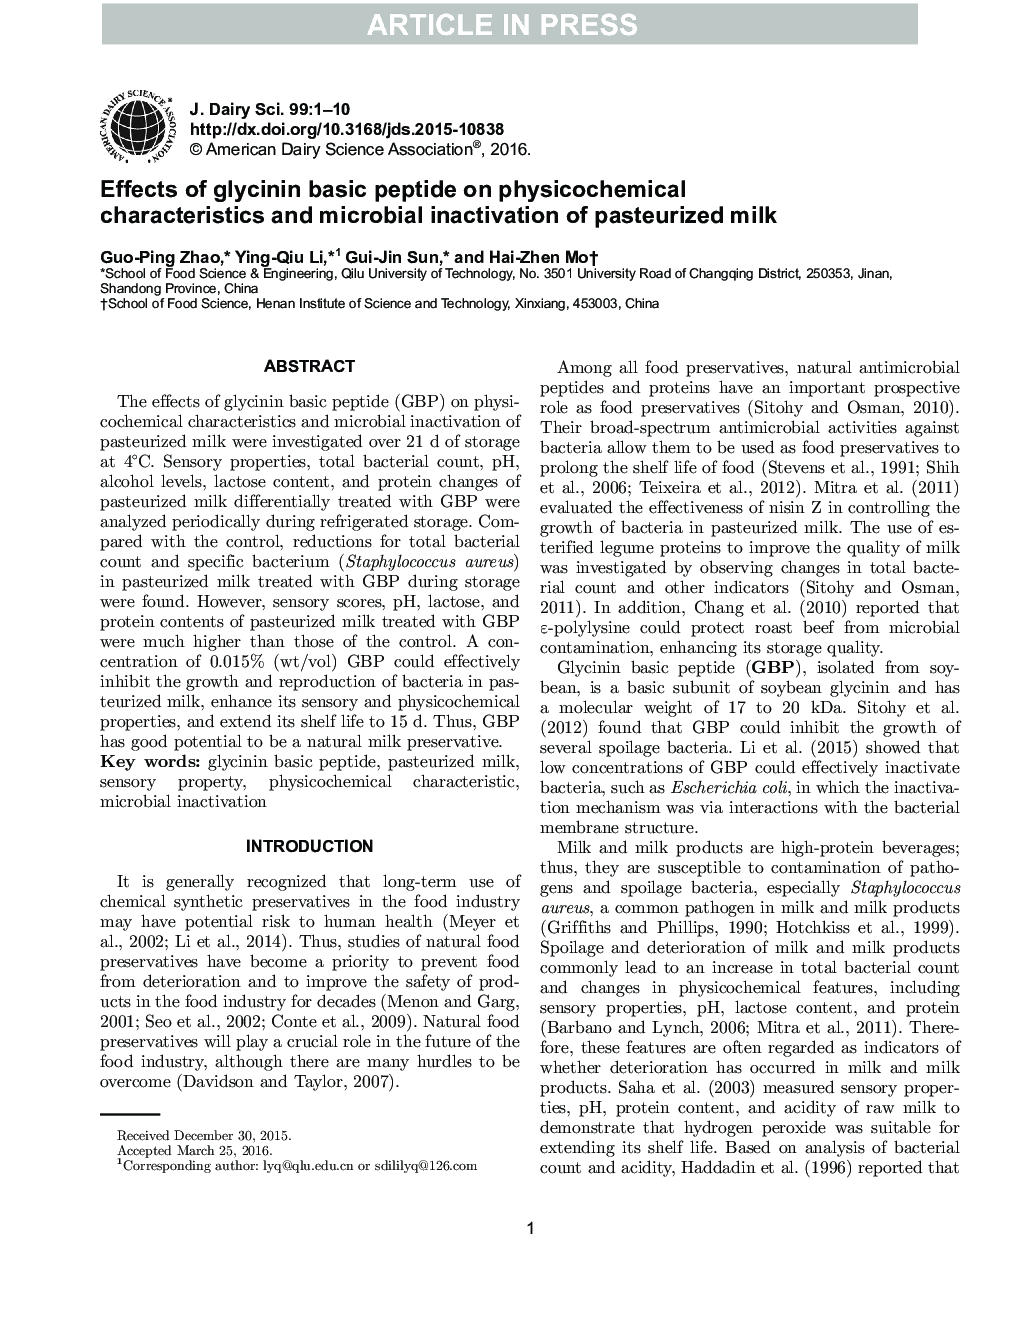 اثر پپتید پایه گلیسینین بر ویژگی های فیزیکی و شیمیایی و غیر فعال سازی میکروبی شیر پاستوریزه 